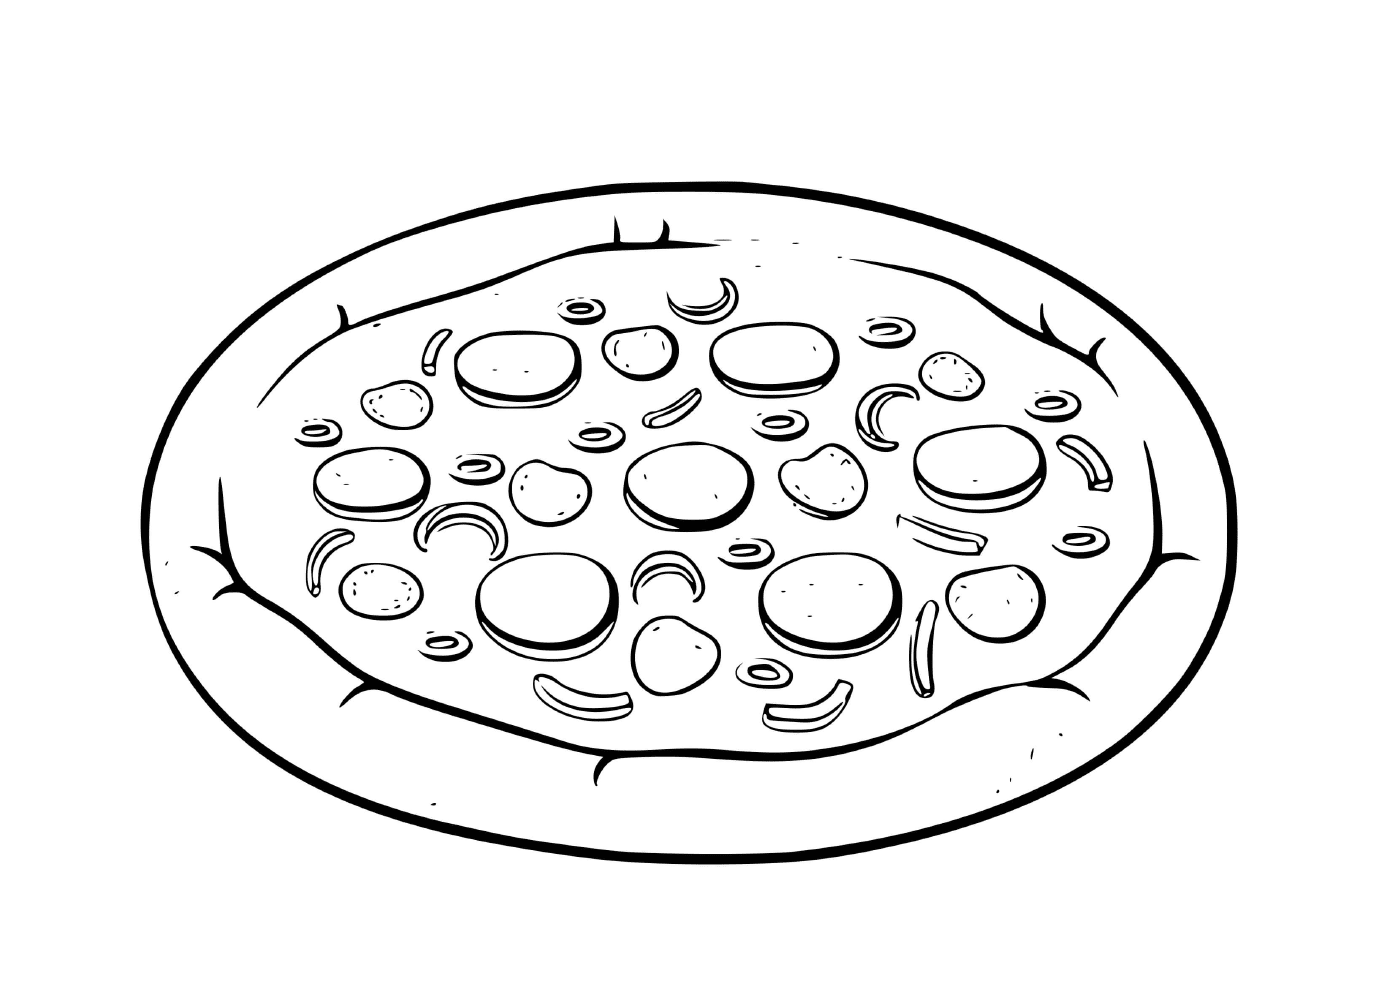  Uma pizza grega 